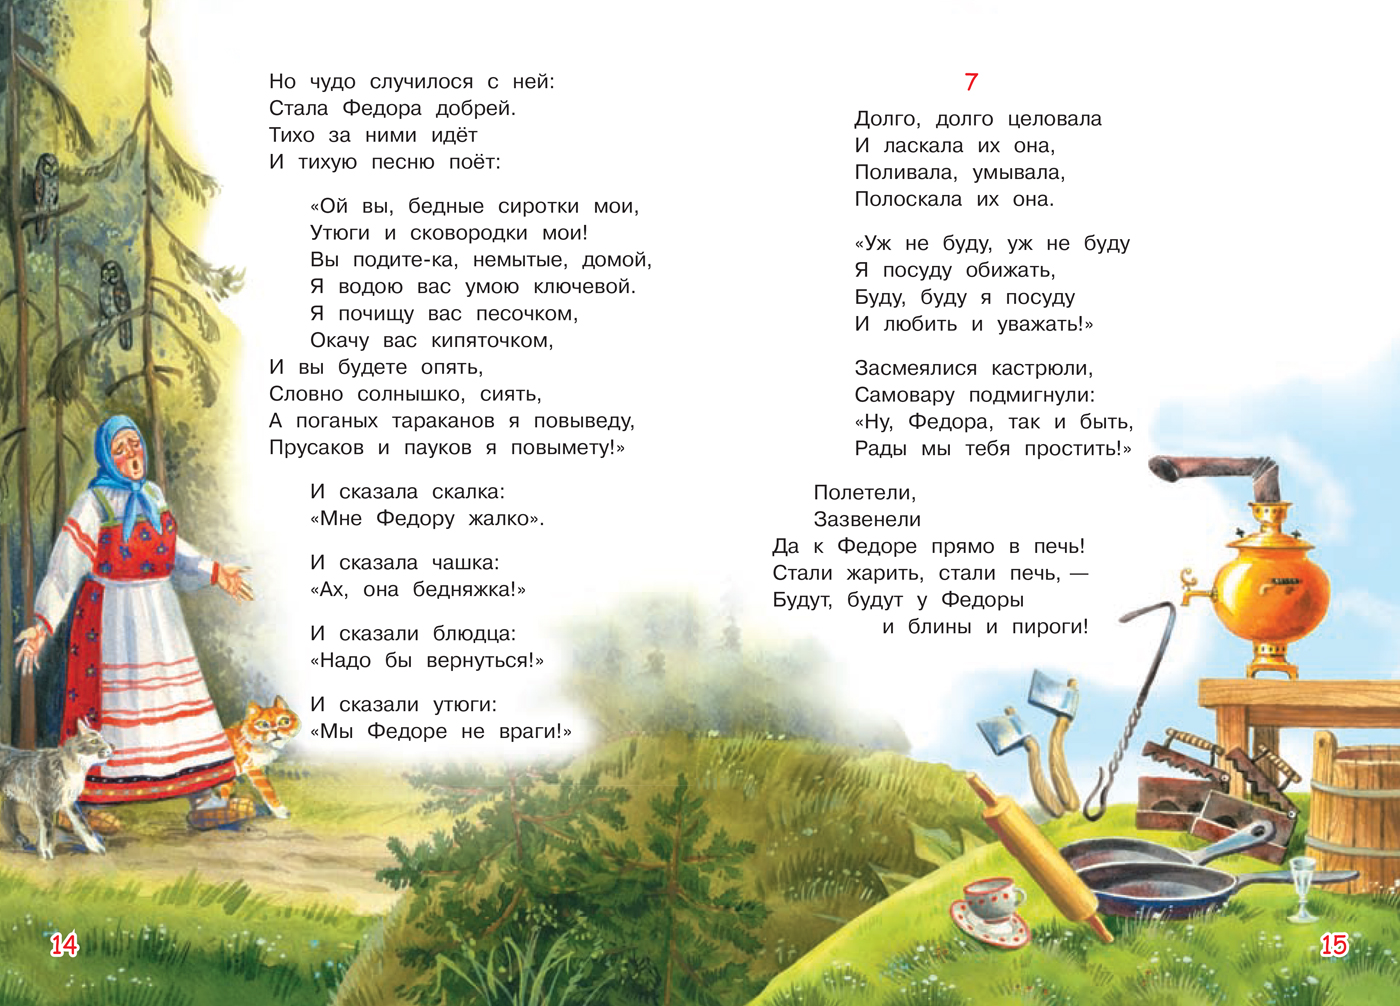 Стихотворение Чуковского Федорино горе